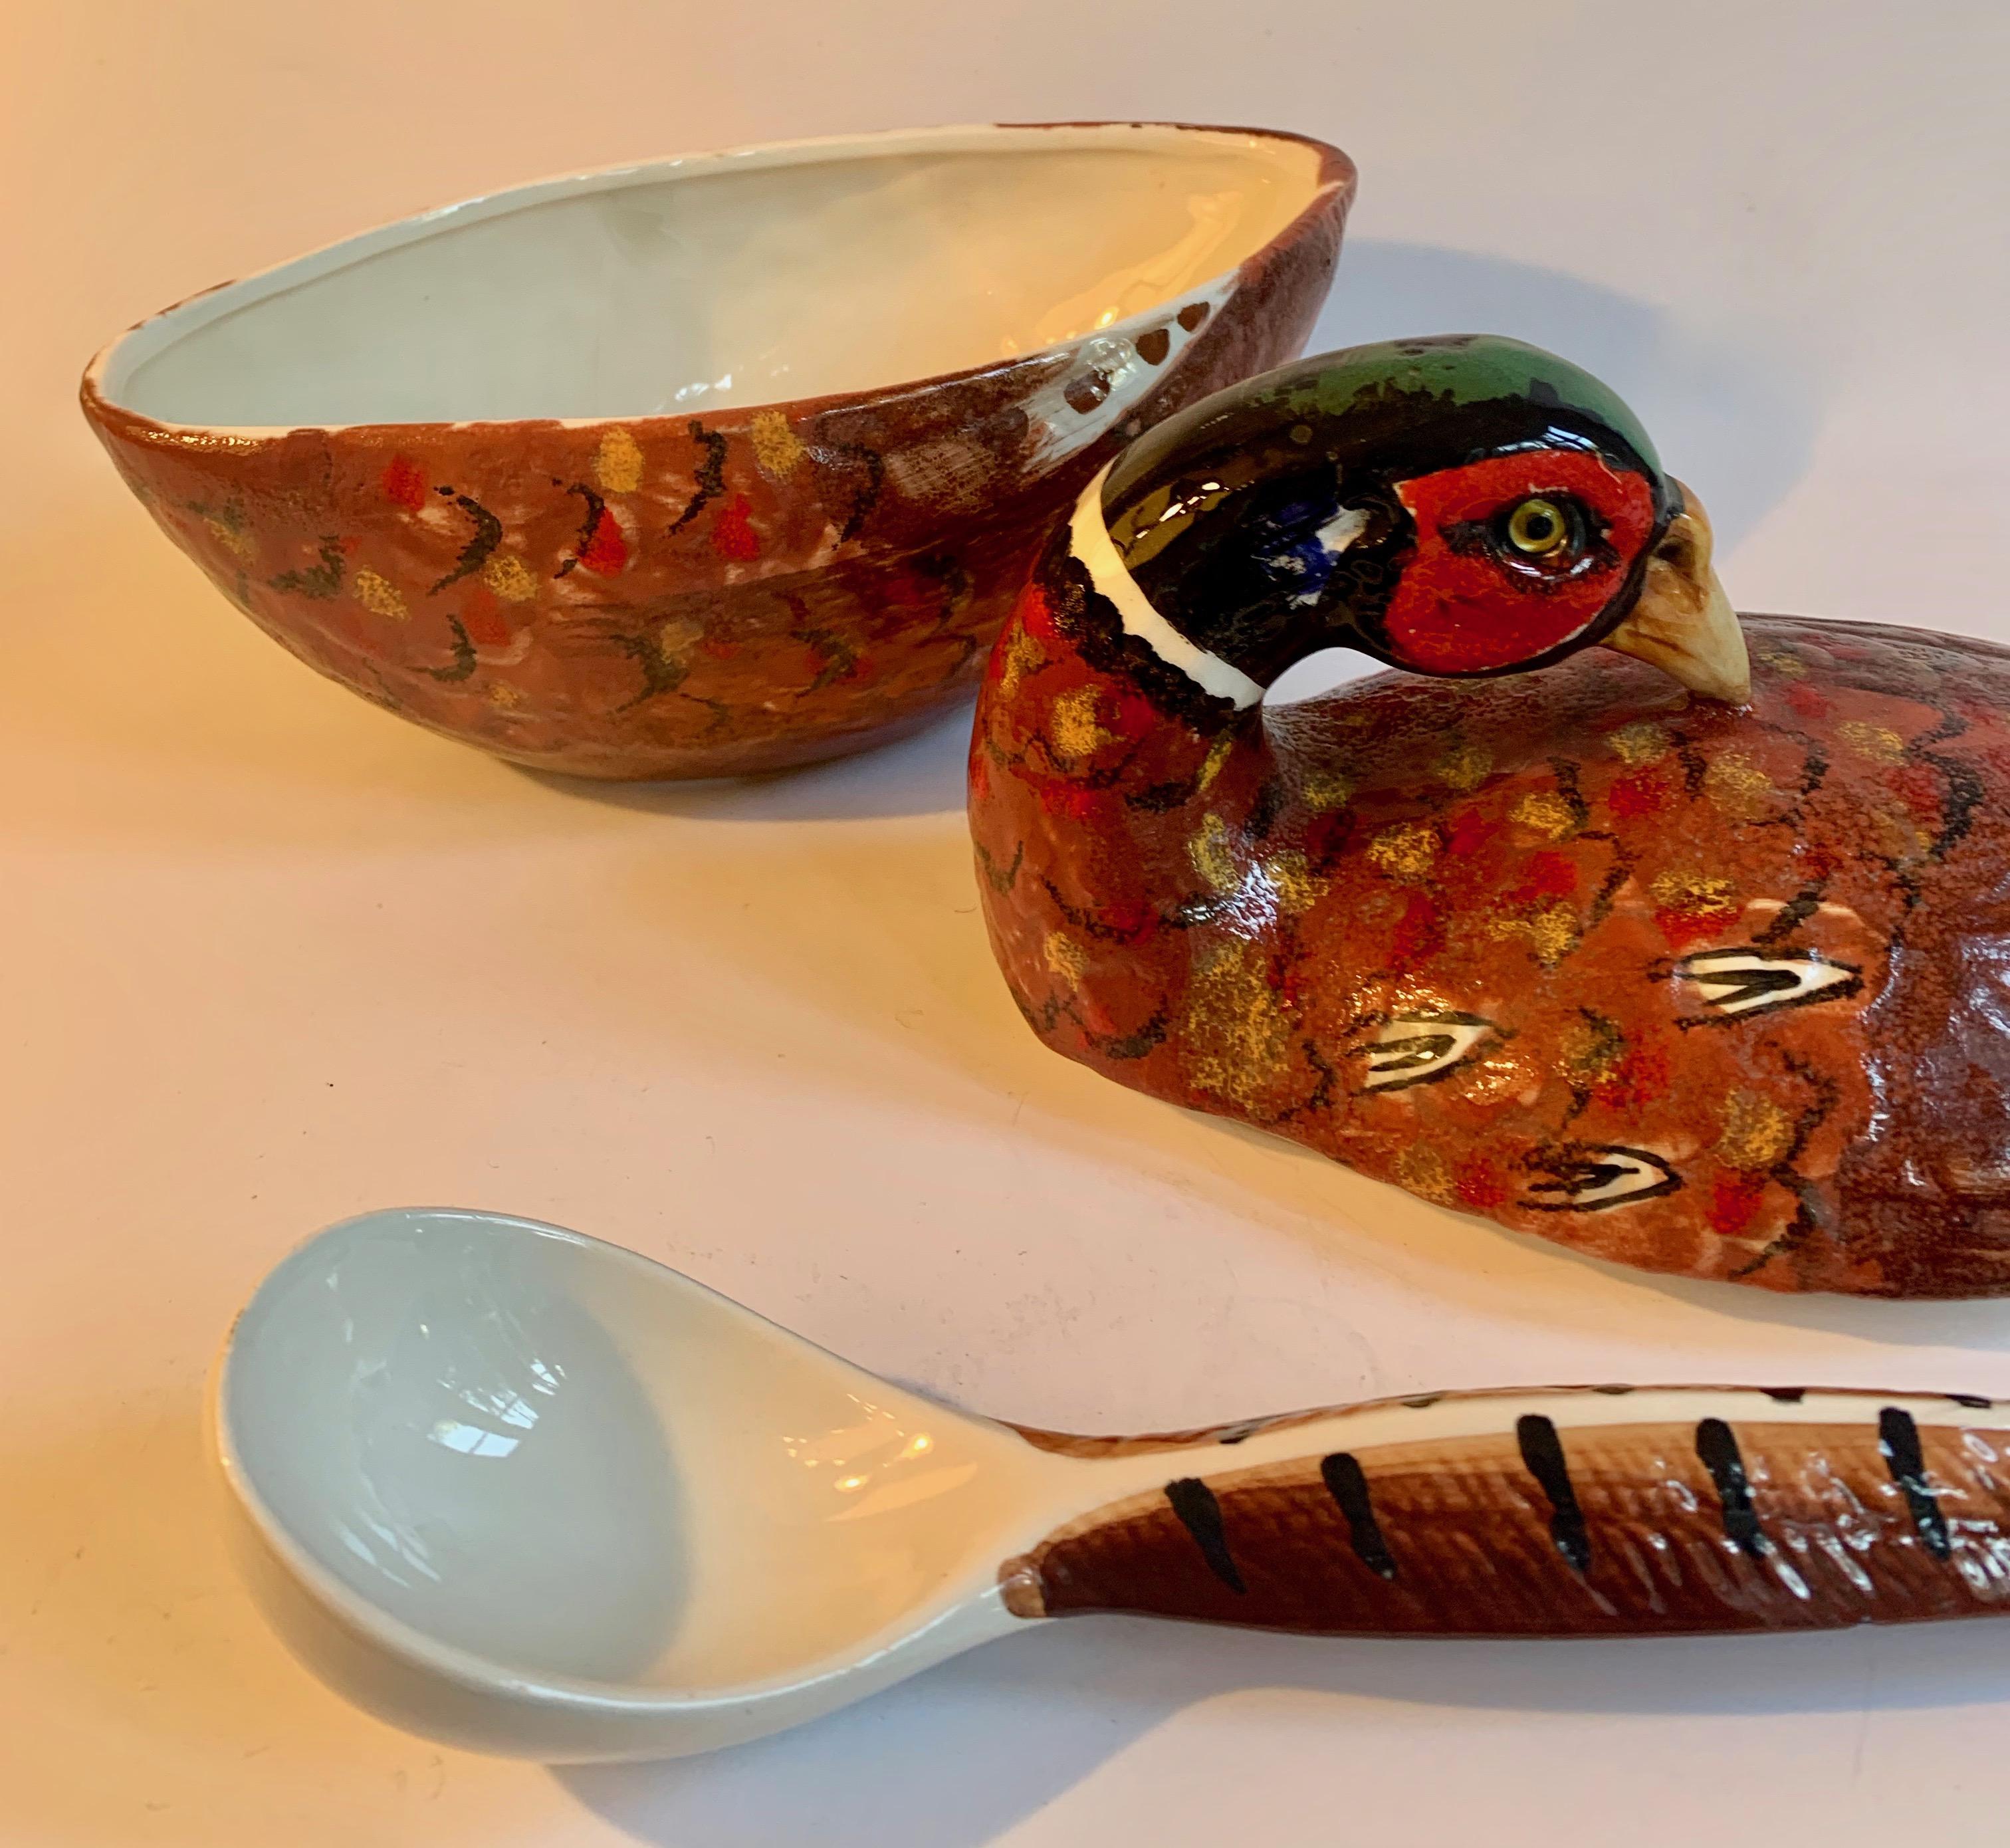 Sopera de cerámica italiana pintada a mano para sopa de faisán con cucharón. Una sopera o salsera de cuchara cubierta por una forma parecida a un pájaro pintada a mano con el cucharón a modo de cola. Una pieza maravillosa para compartir